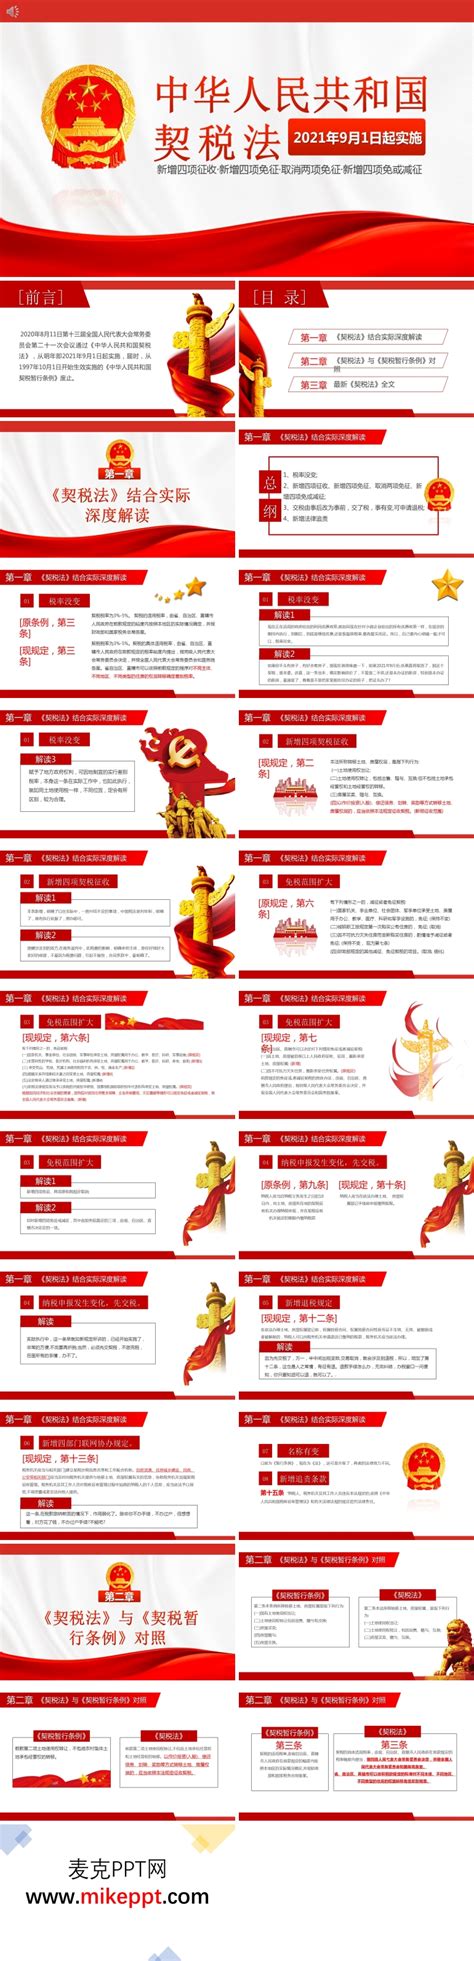 中华人民共和国契税法最新 - 律科网